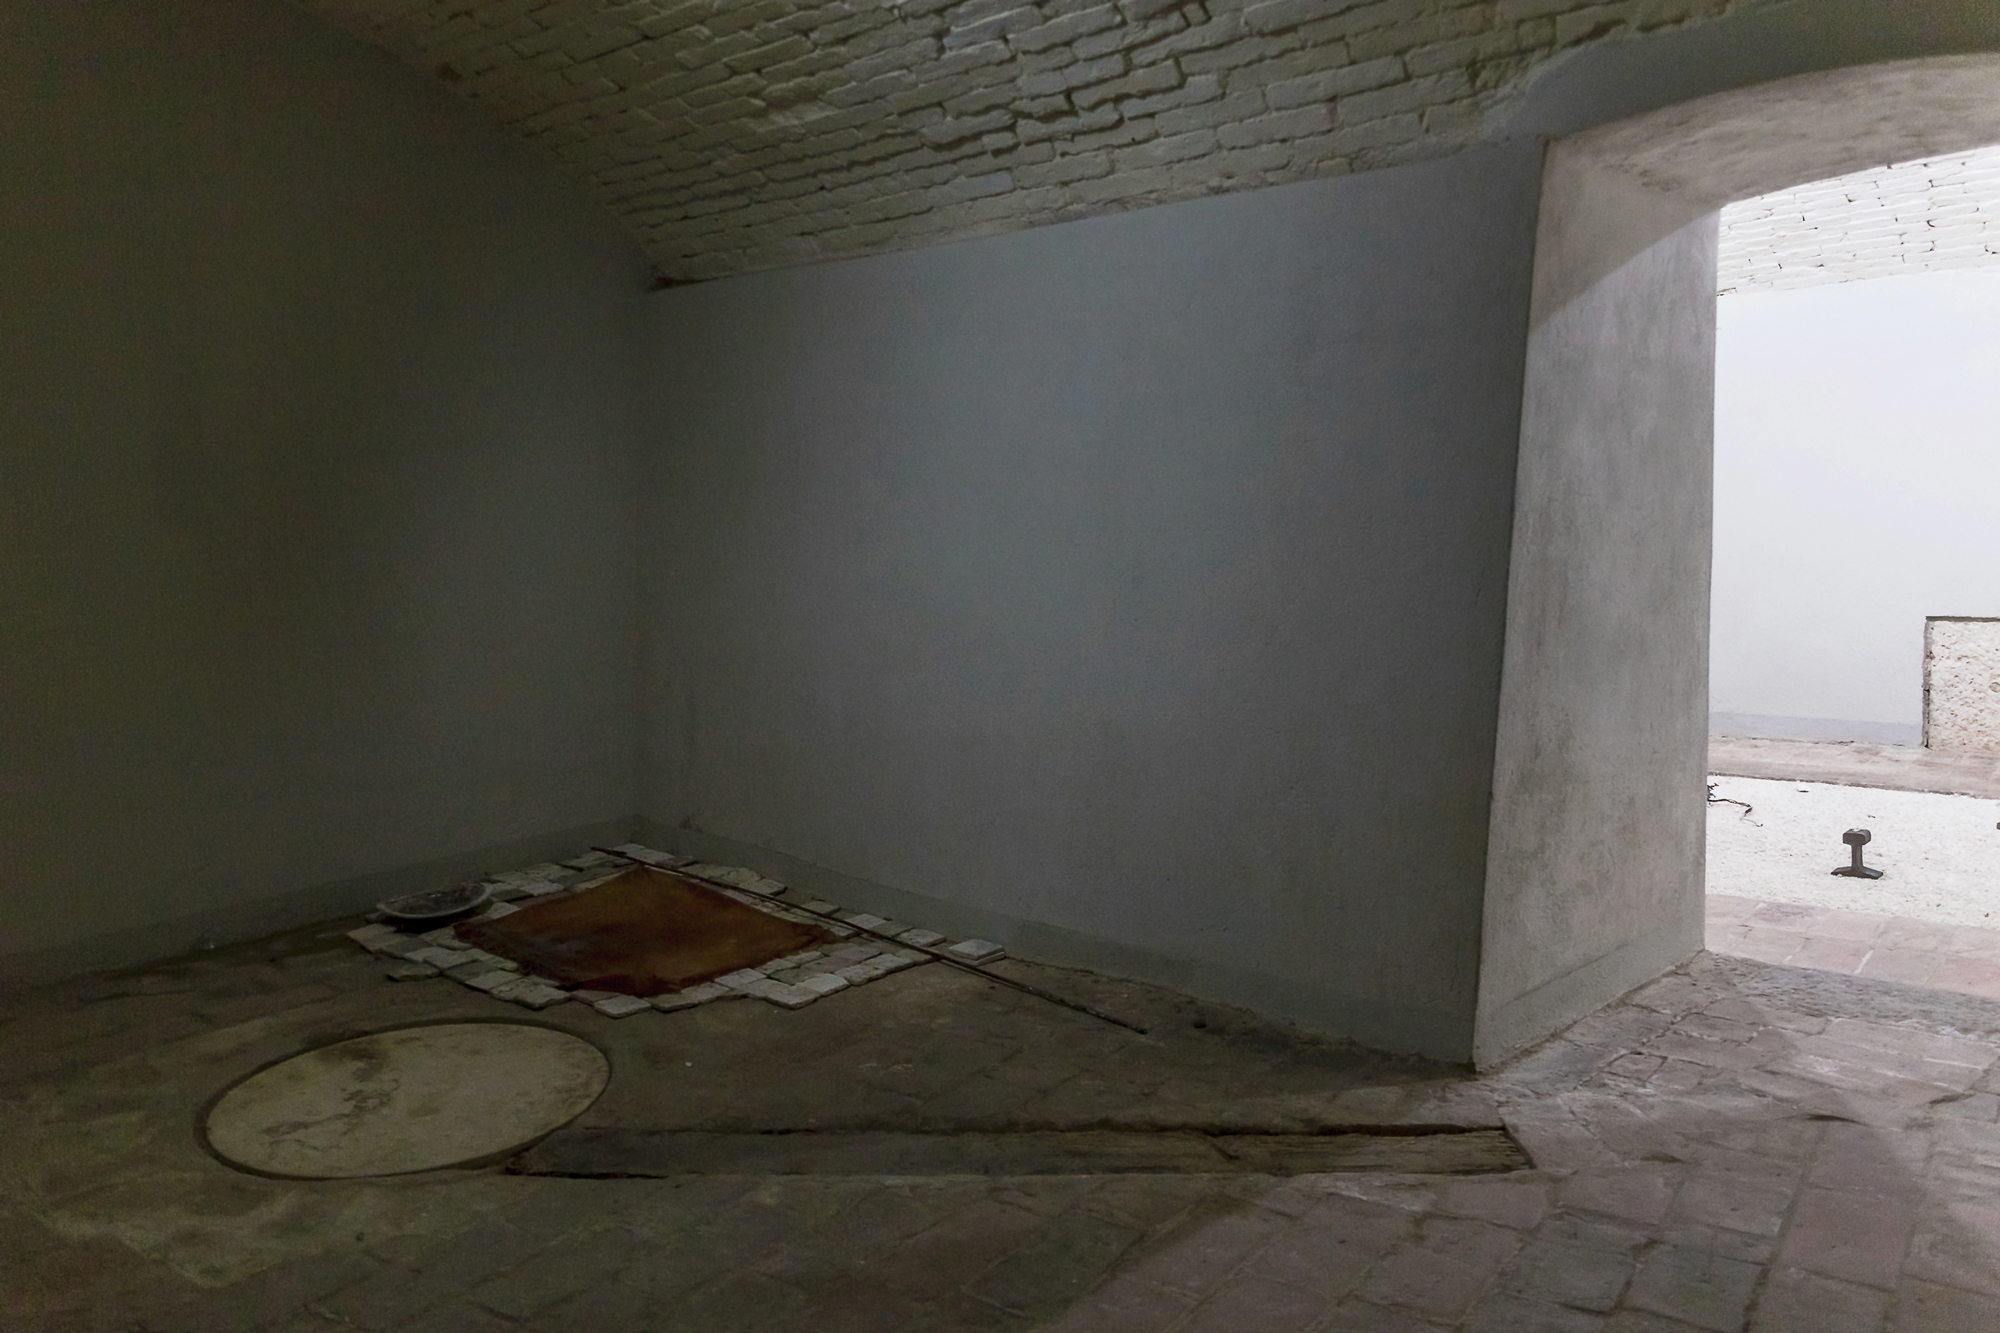   il chiaritoio,  installation view, museo della grancia, italy 2018 